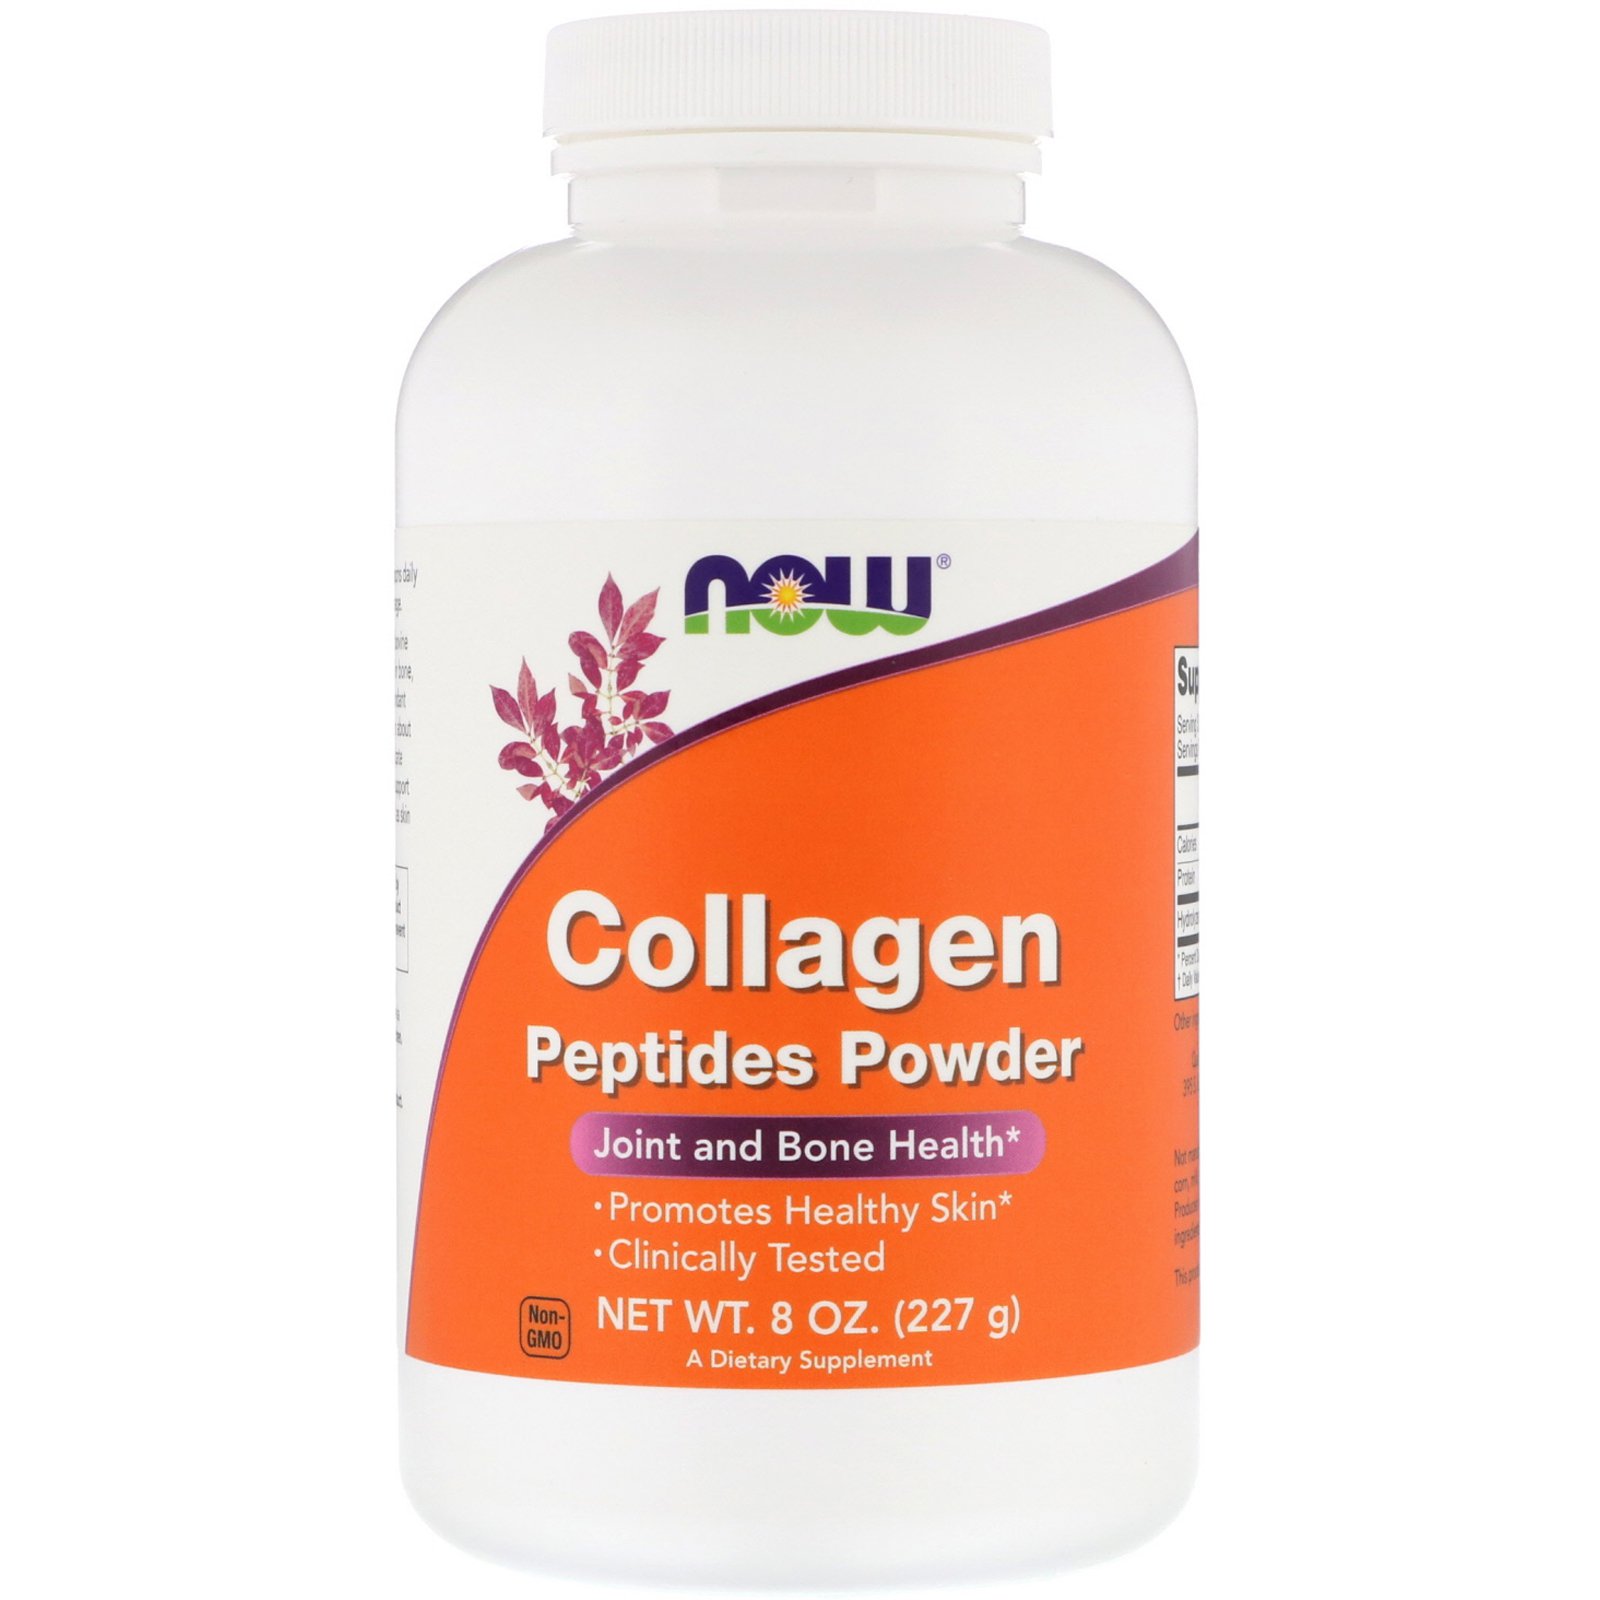 Collagen Peptides Powder